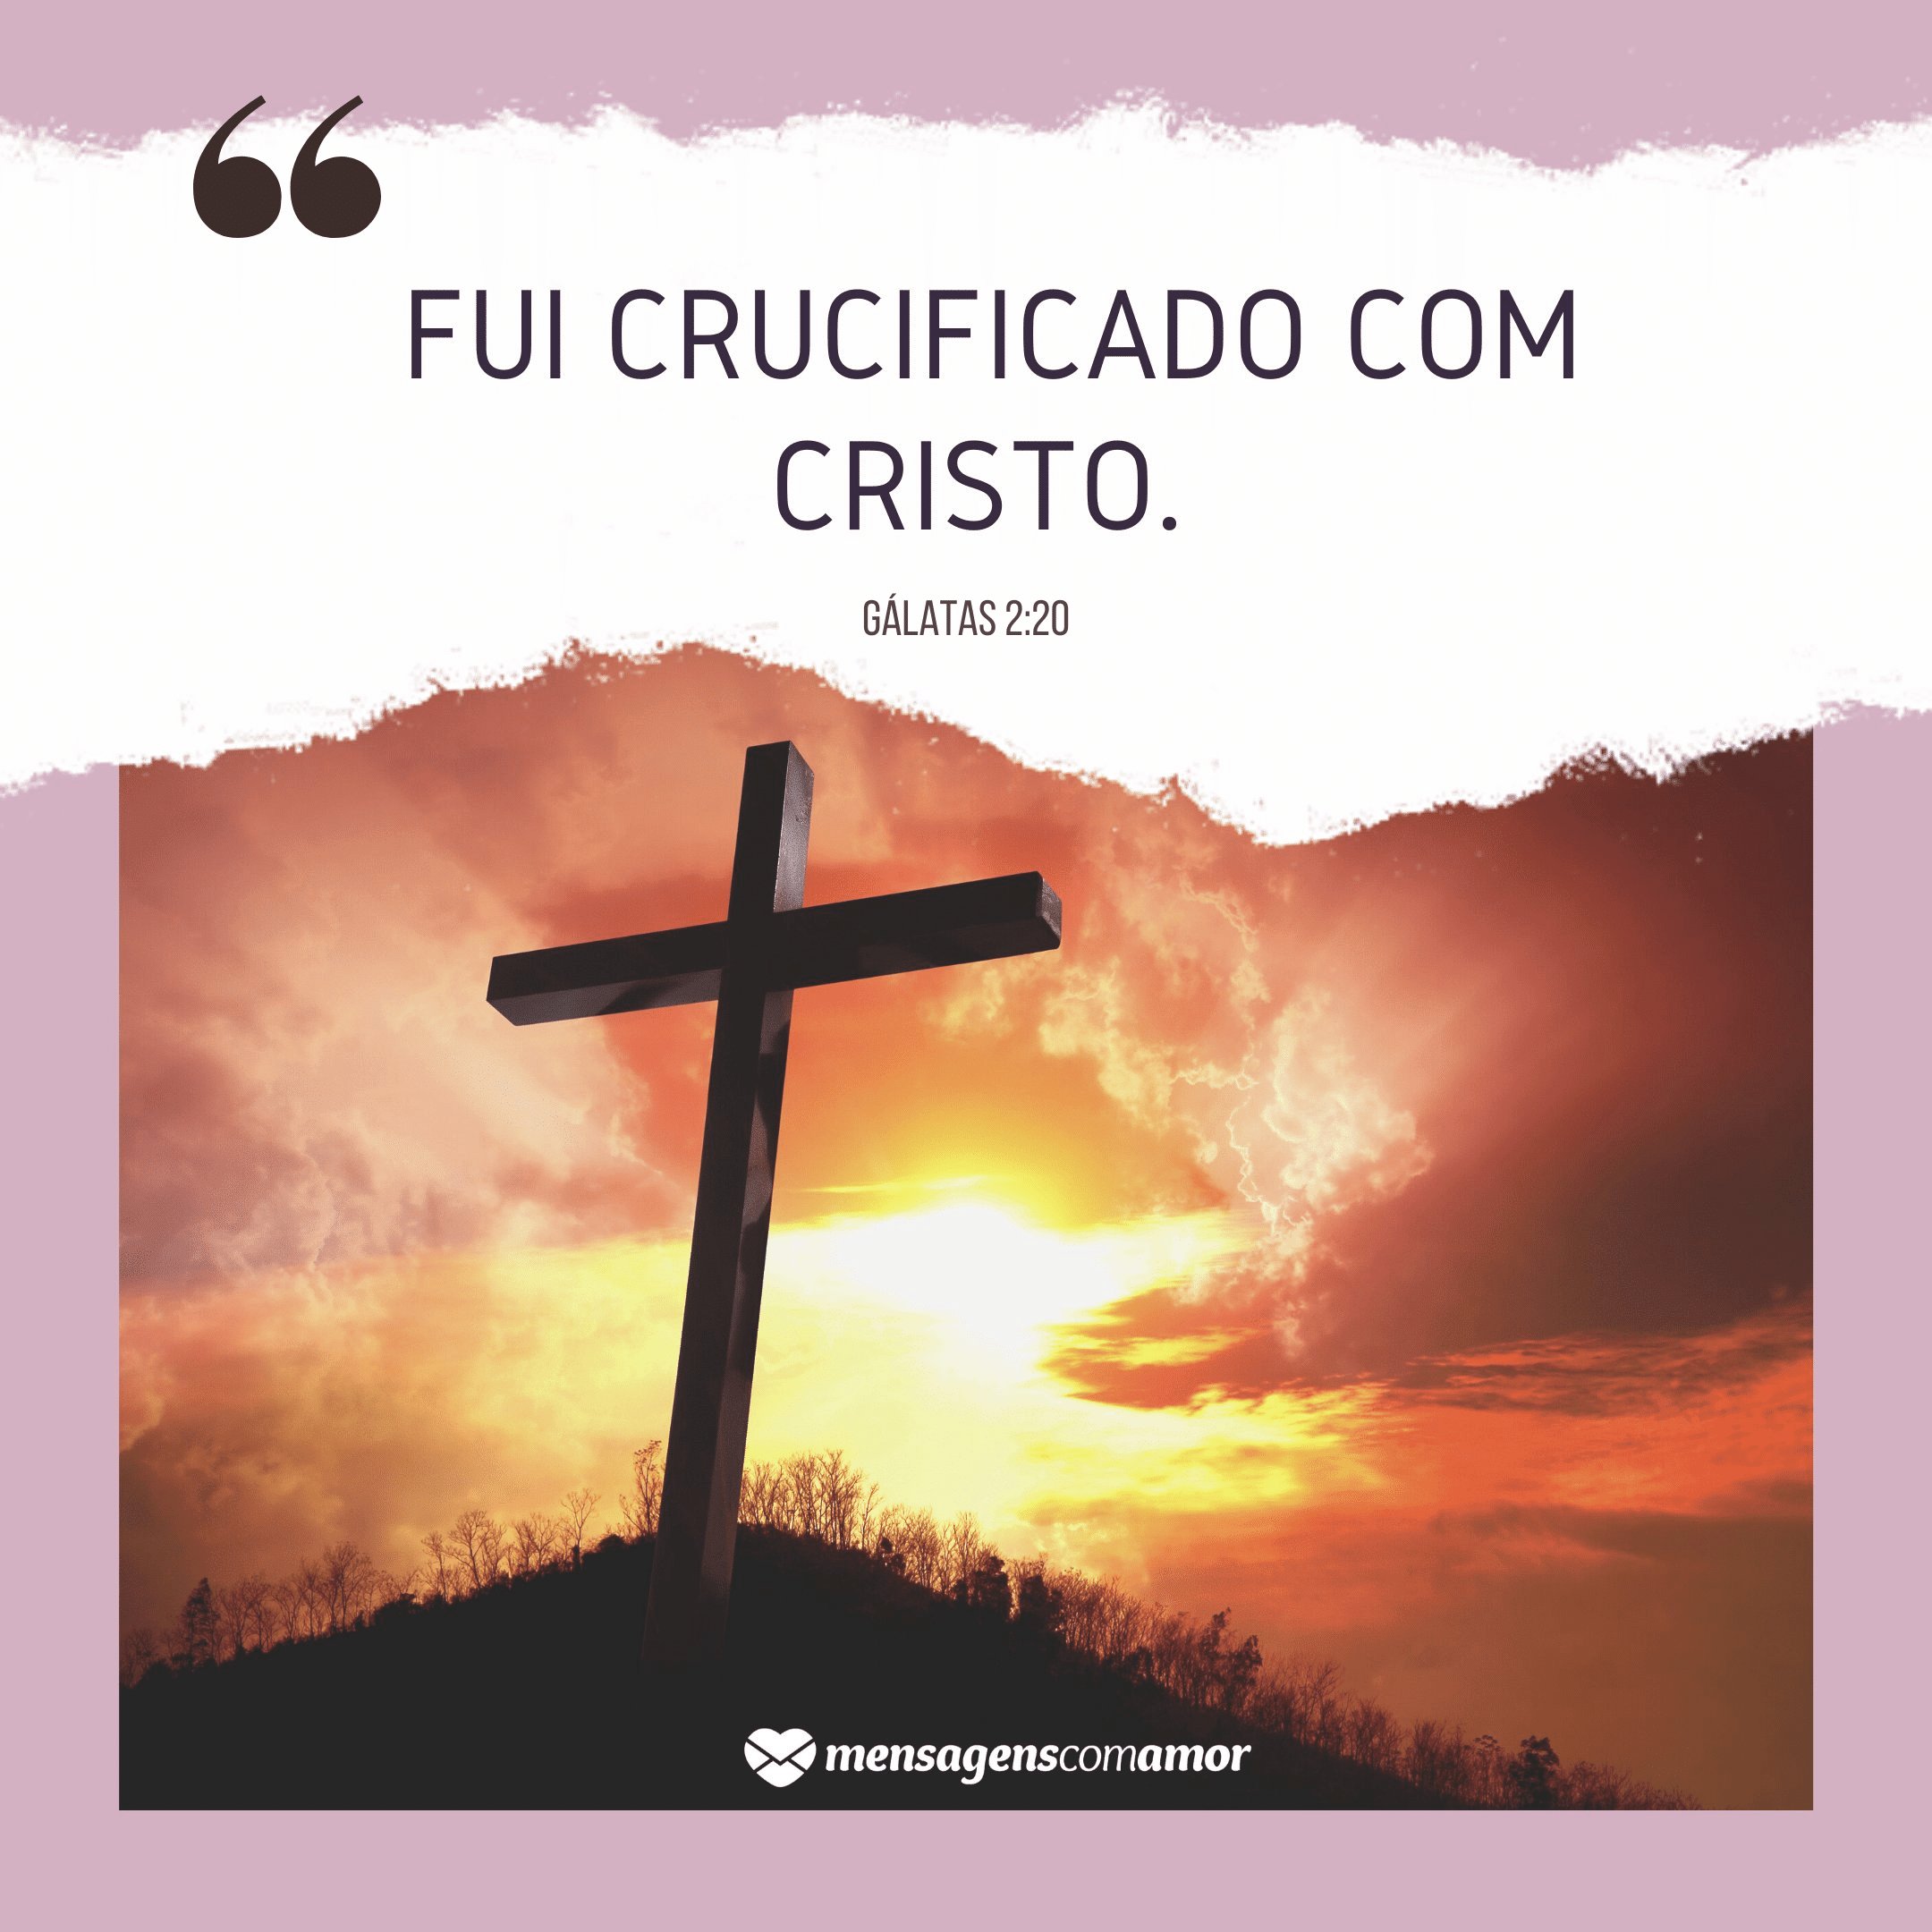 'Fui crucificado com Cristo.' - Versículos para refletir